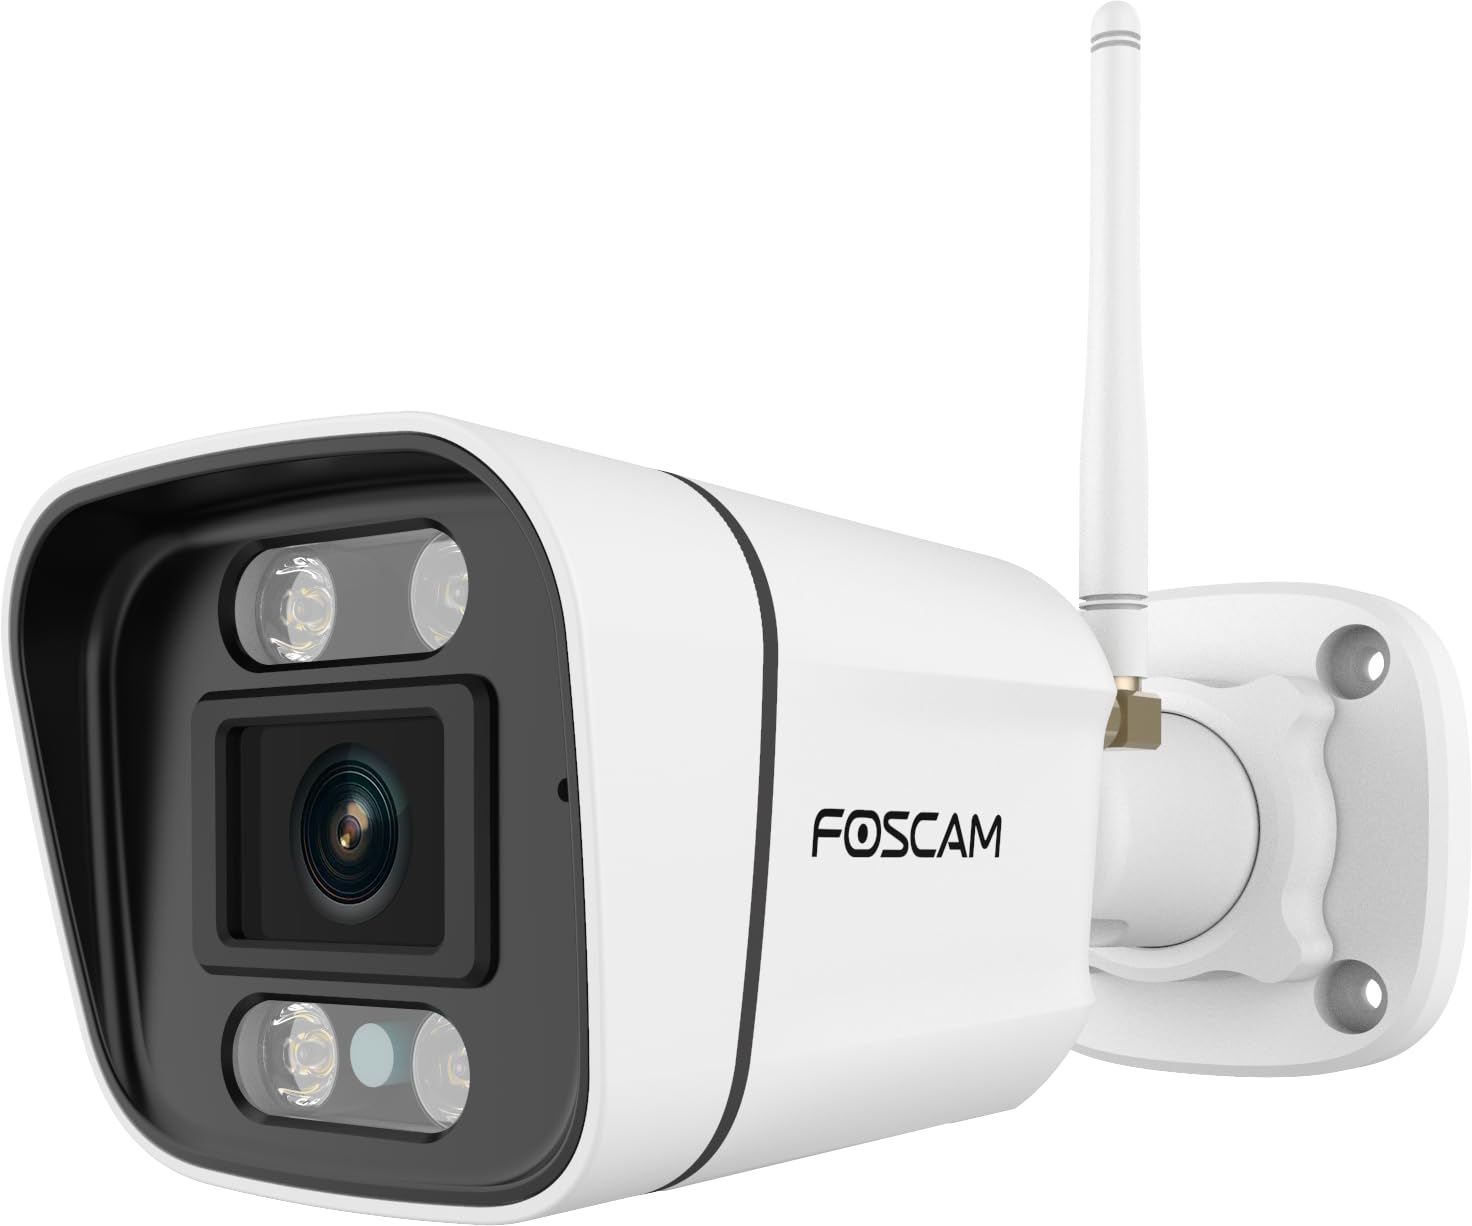 Foscam IP-Kamera V5P 5 MP mit Zwei-Wege-Audio, Nachtlicht und Sirene inklusive, Weiß